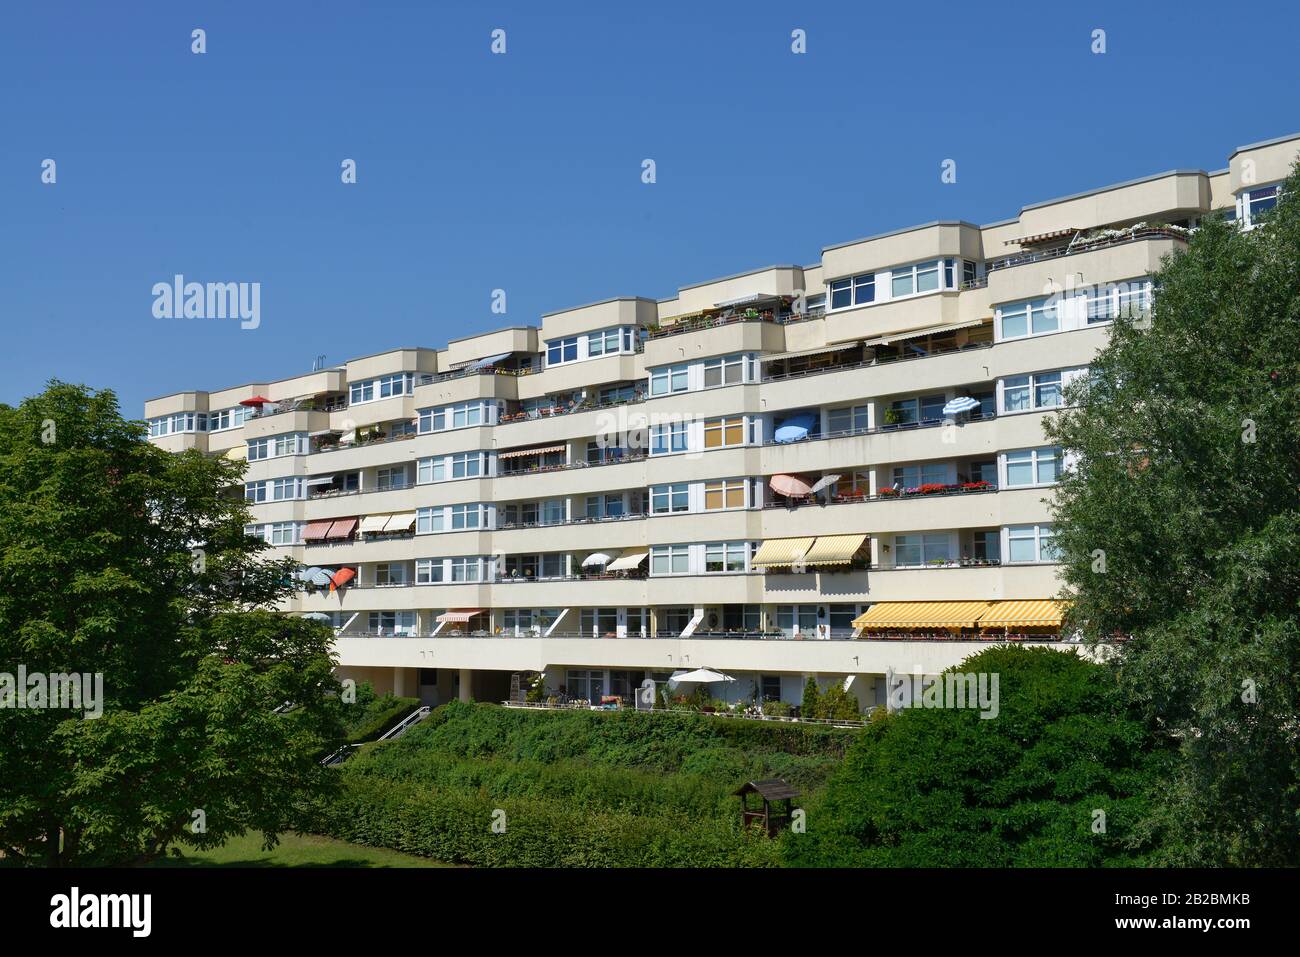 Wohnungen, Schifffahrtsufer, Spandau, Berlin, Deutschland Stock Photo